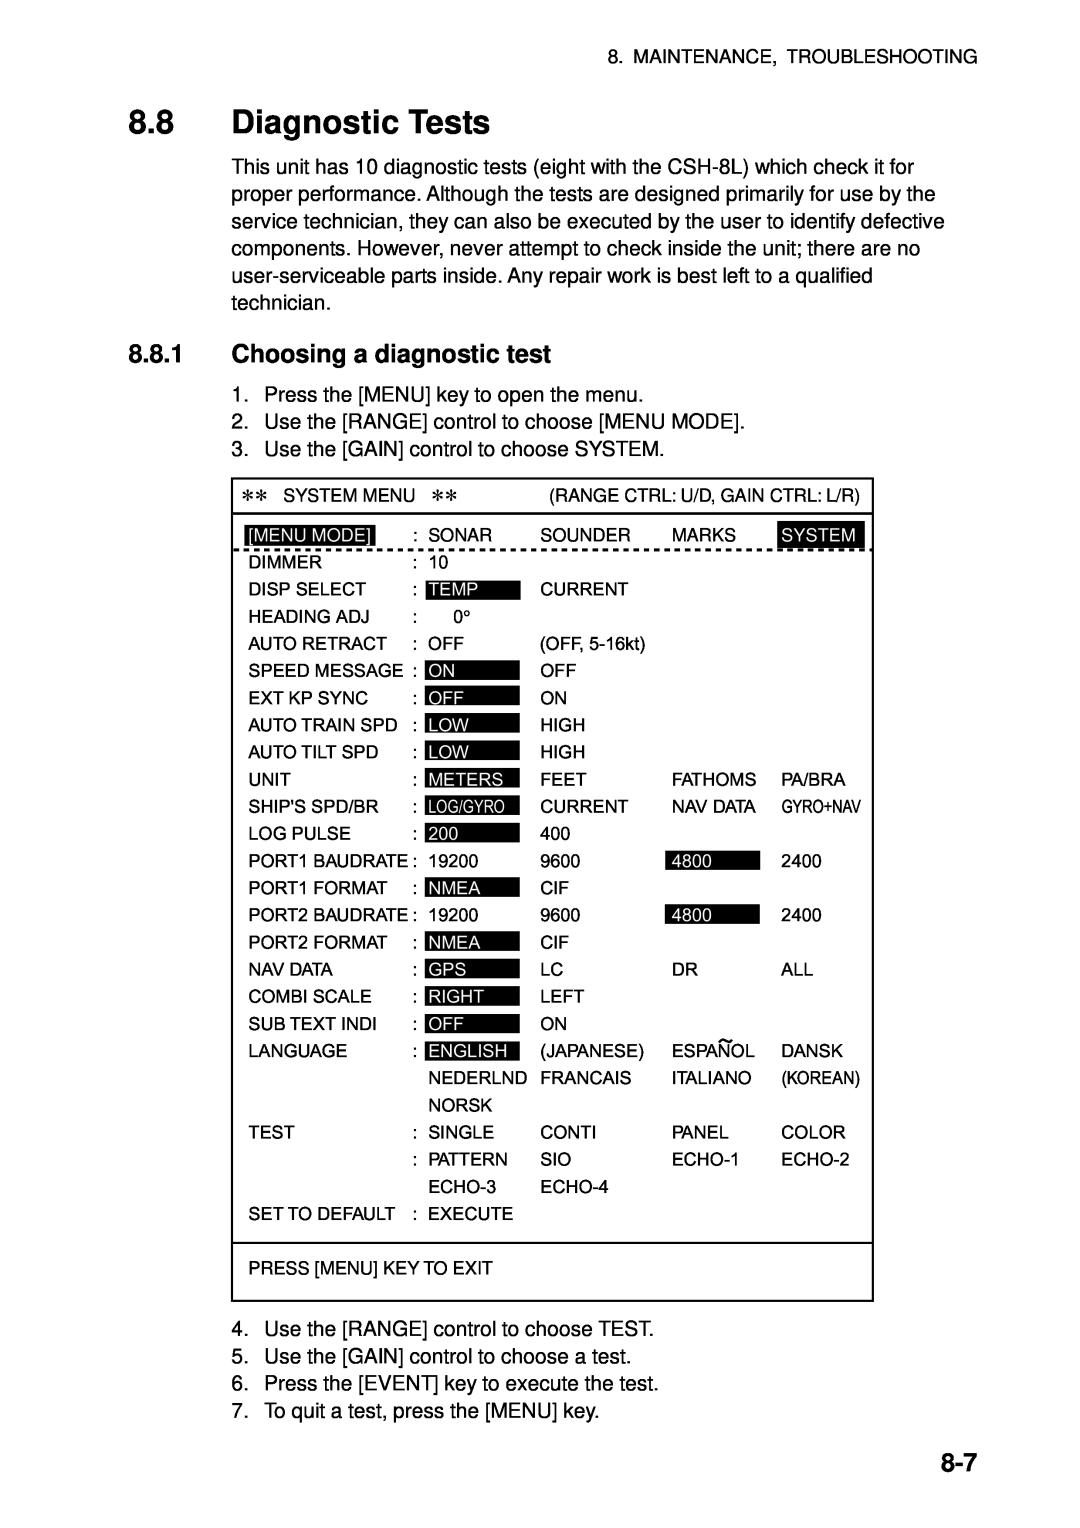 Furuno CSH-5L/CSH-8L manual Diagnostic Tests, Choosing a diagnostic test 